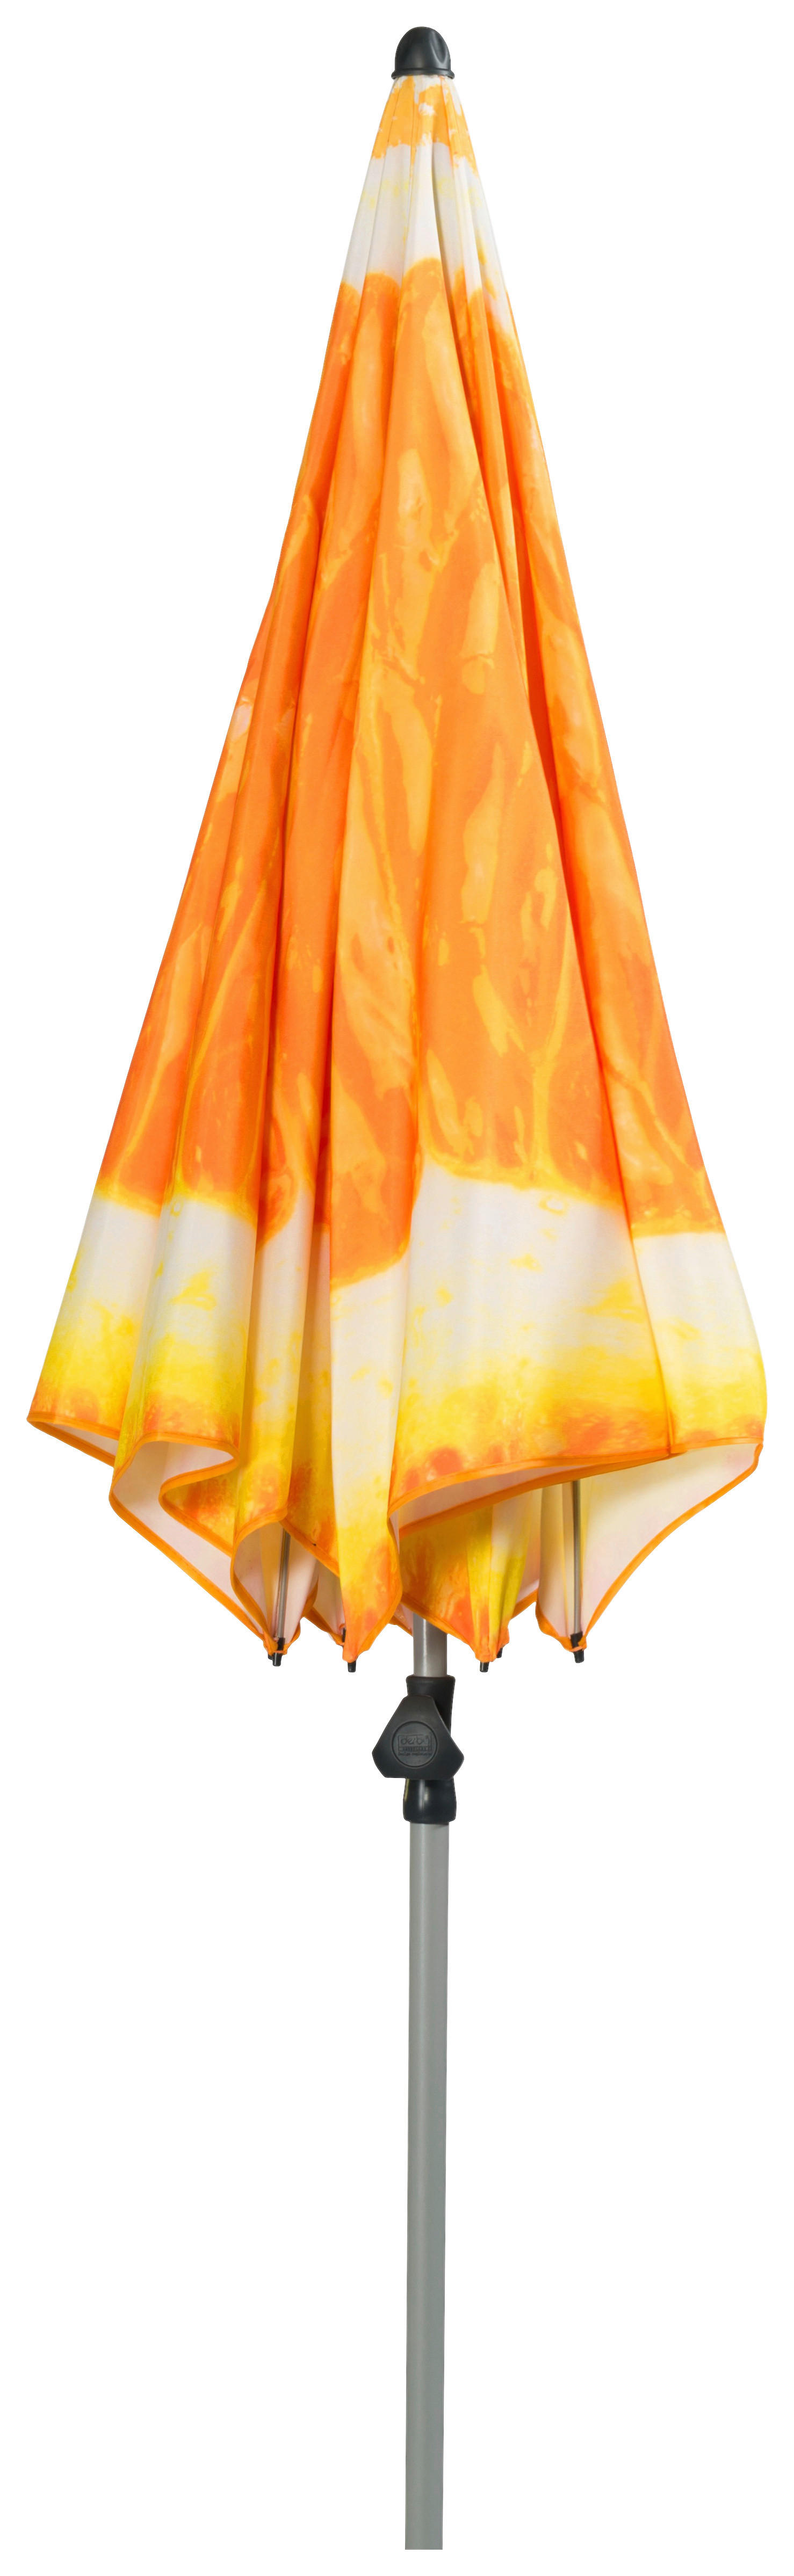 SONNENSCHIRM 200 cm Orange  - Silberfarben/Orange, Design, Textil/Metall (200/200cm) - Doppler